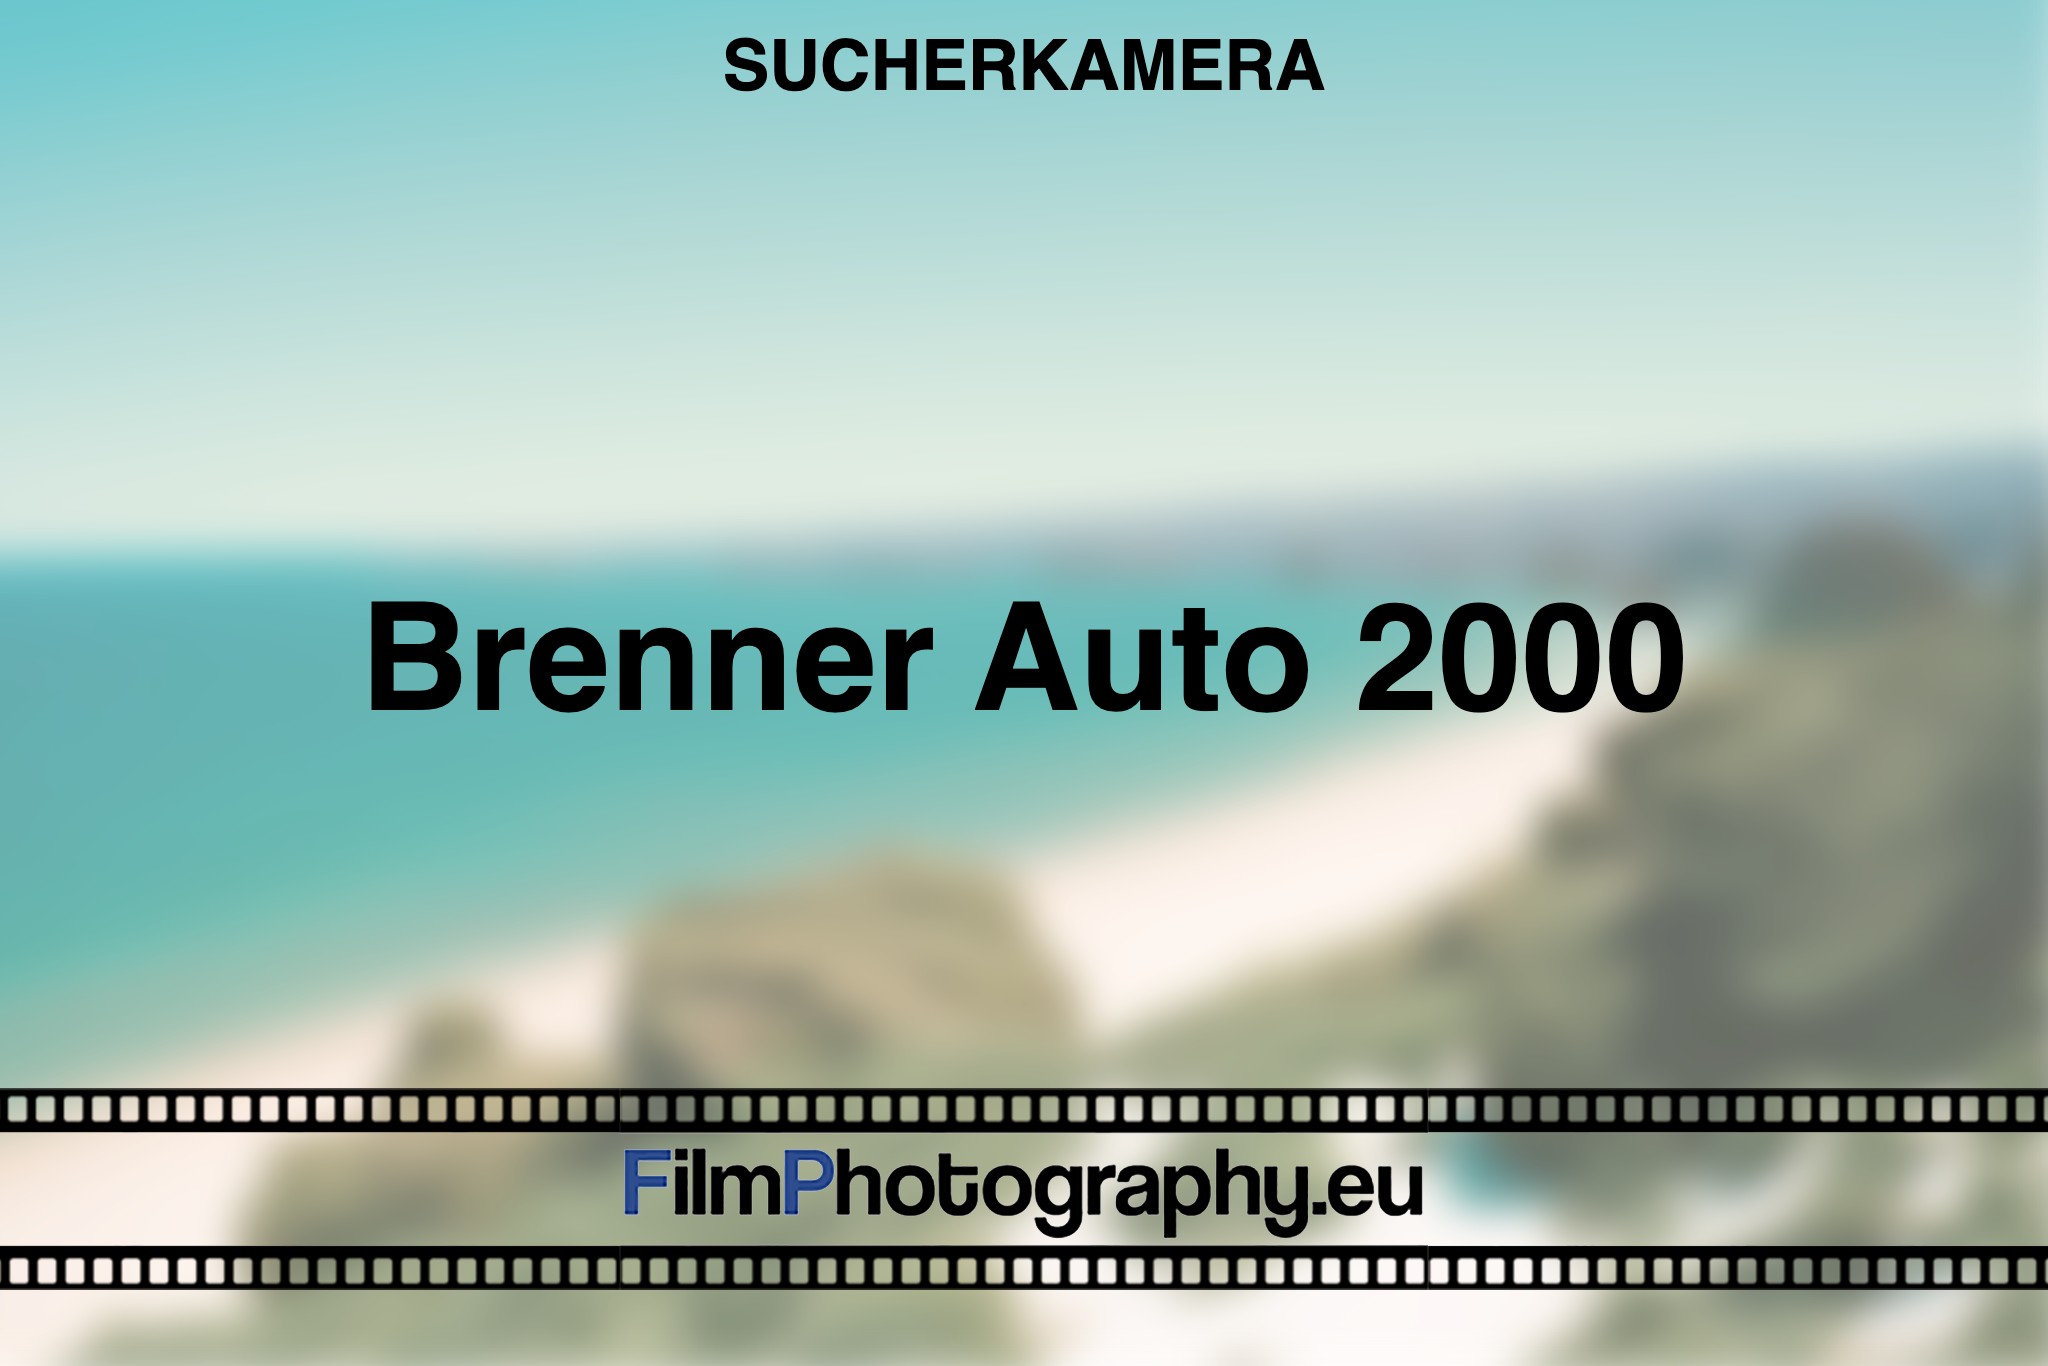 brenner-auto-2000-sucherkamera-bnv